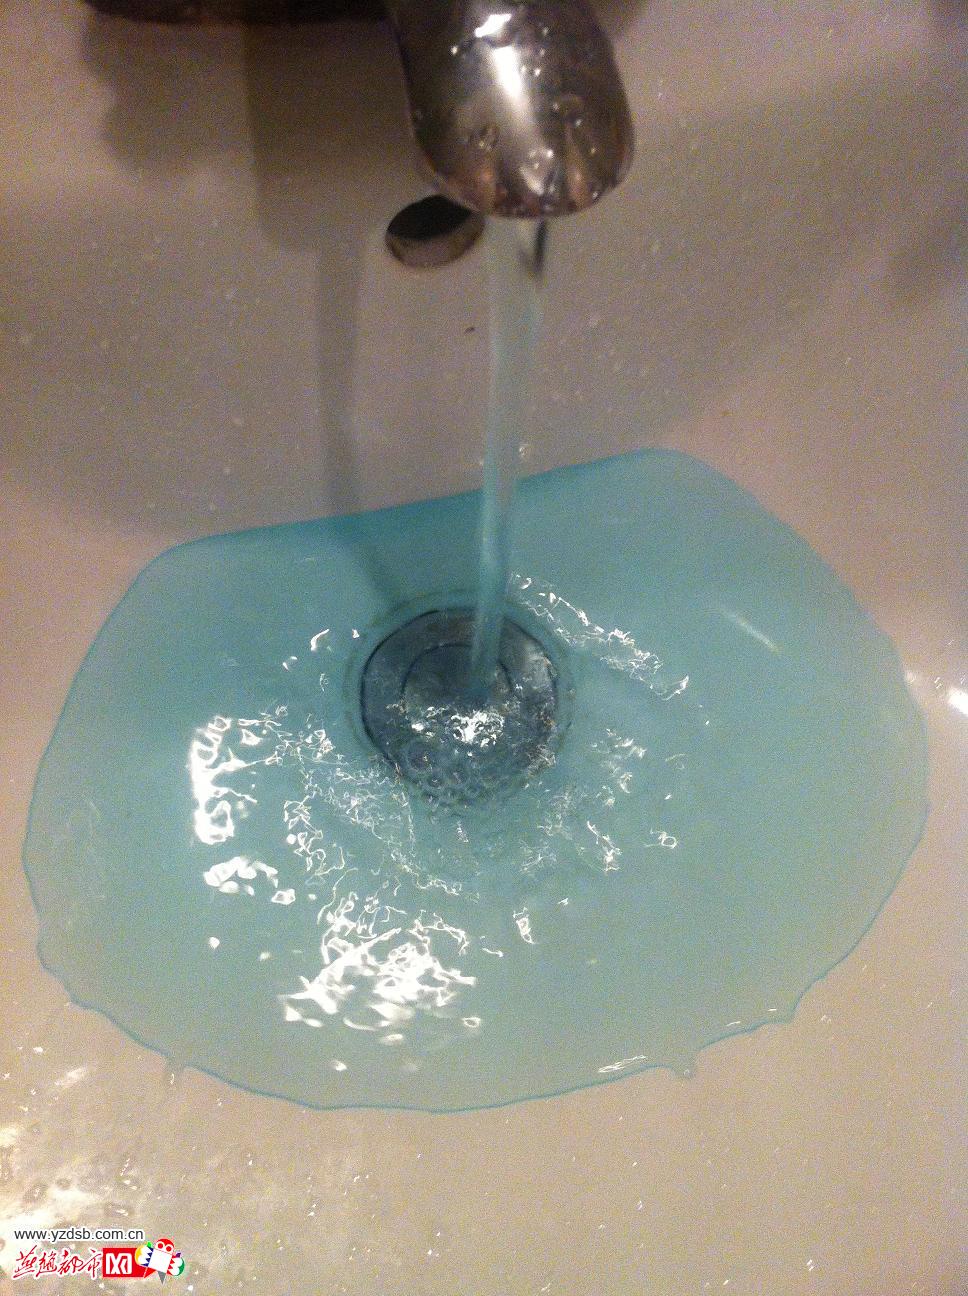 邯郸一居民家中流出蓝色自来水 原是洁厕剂作